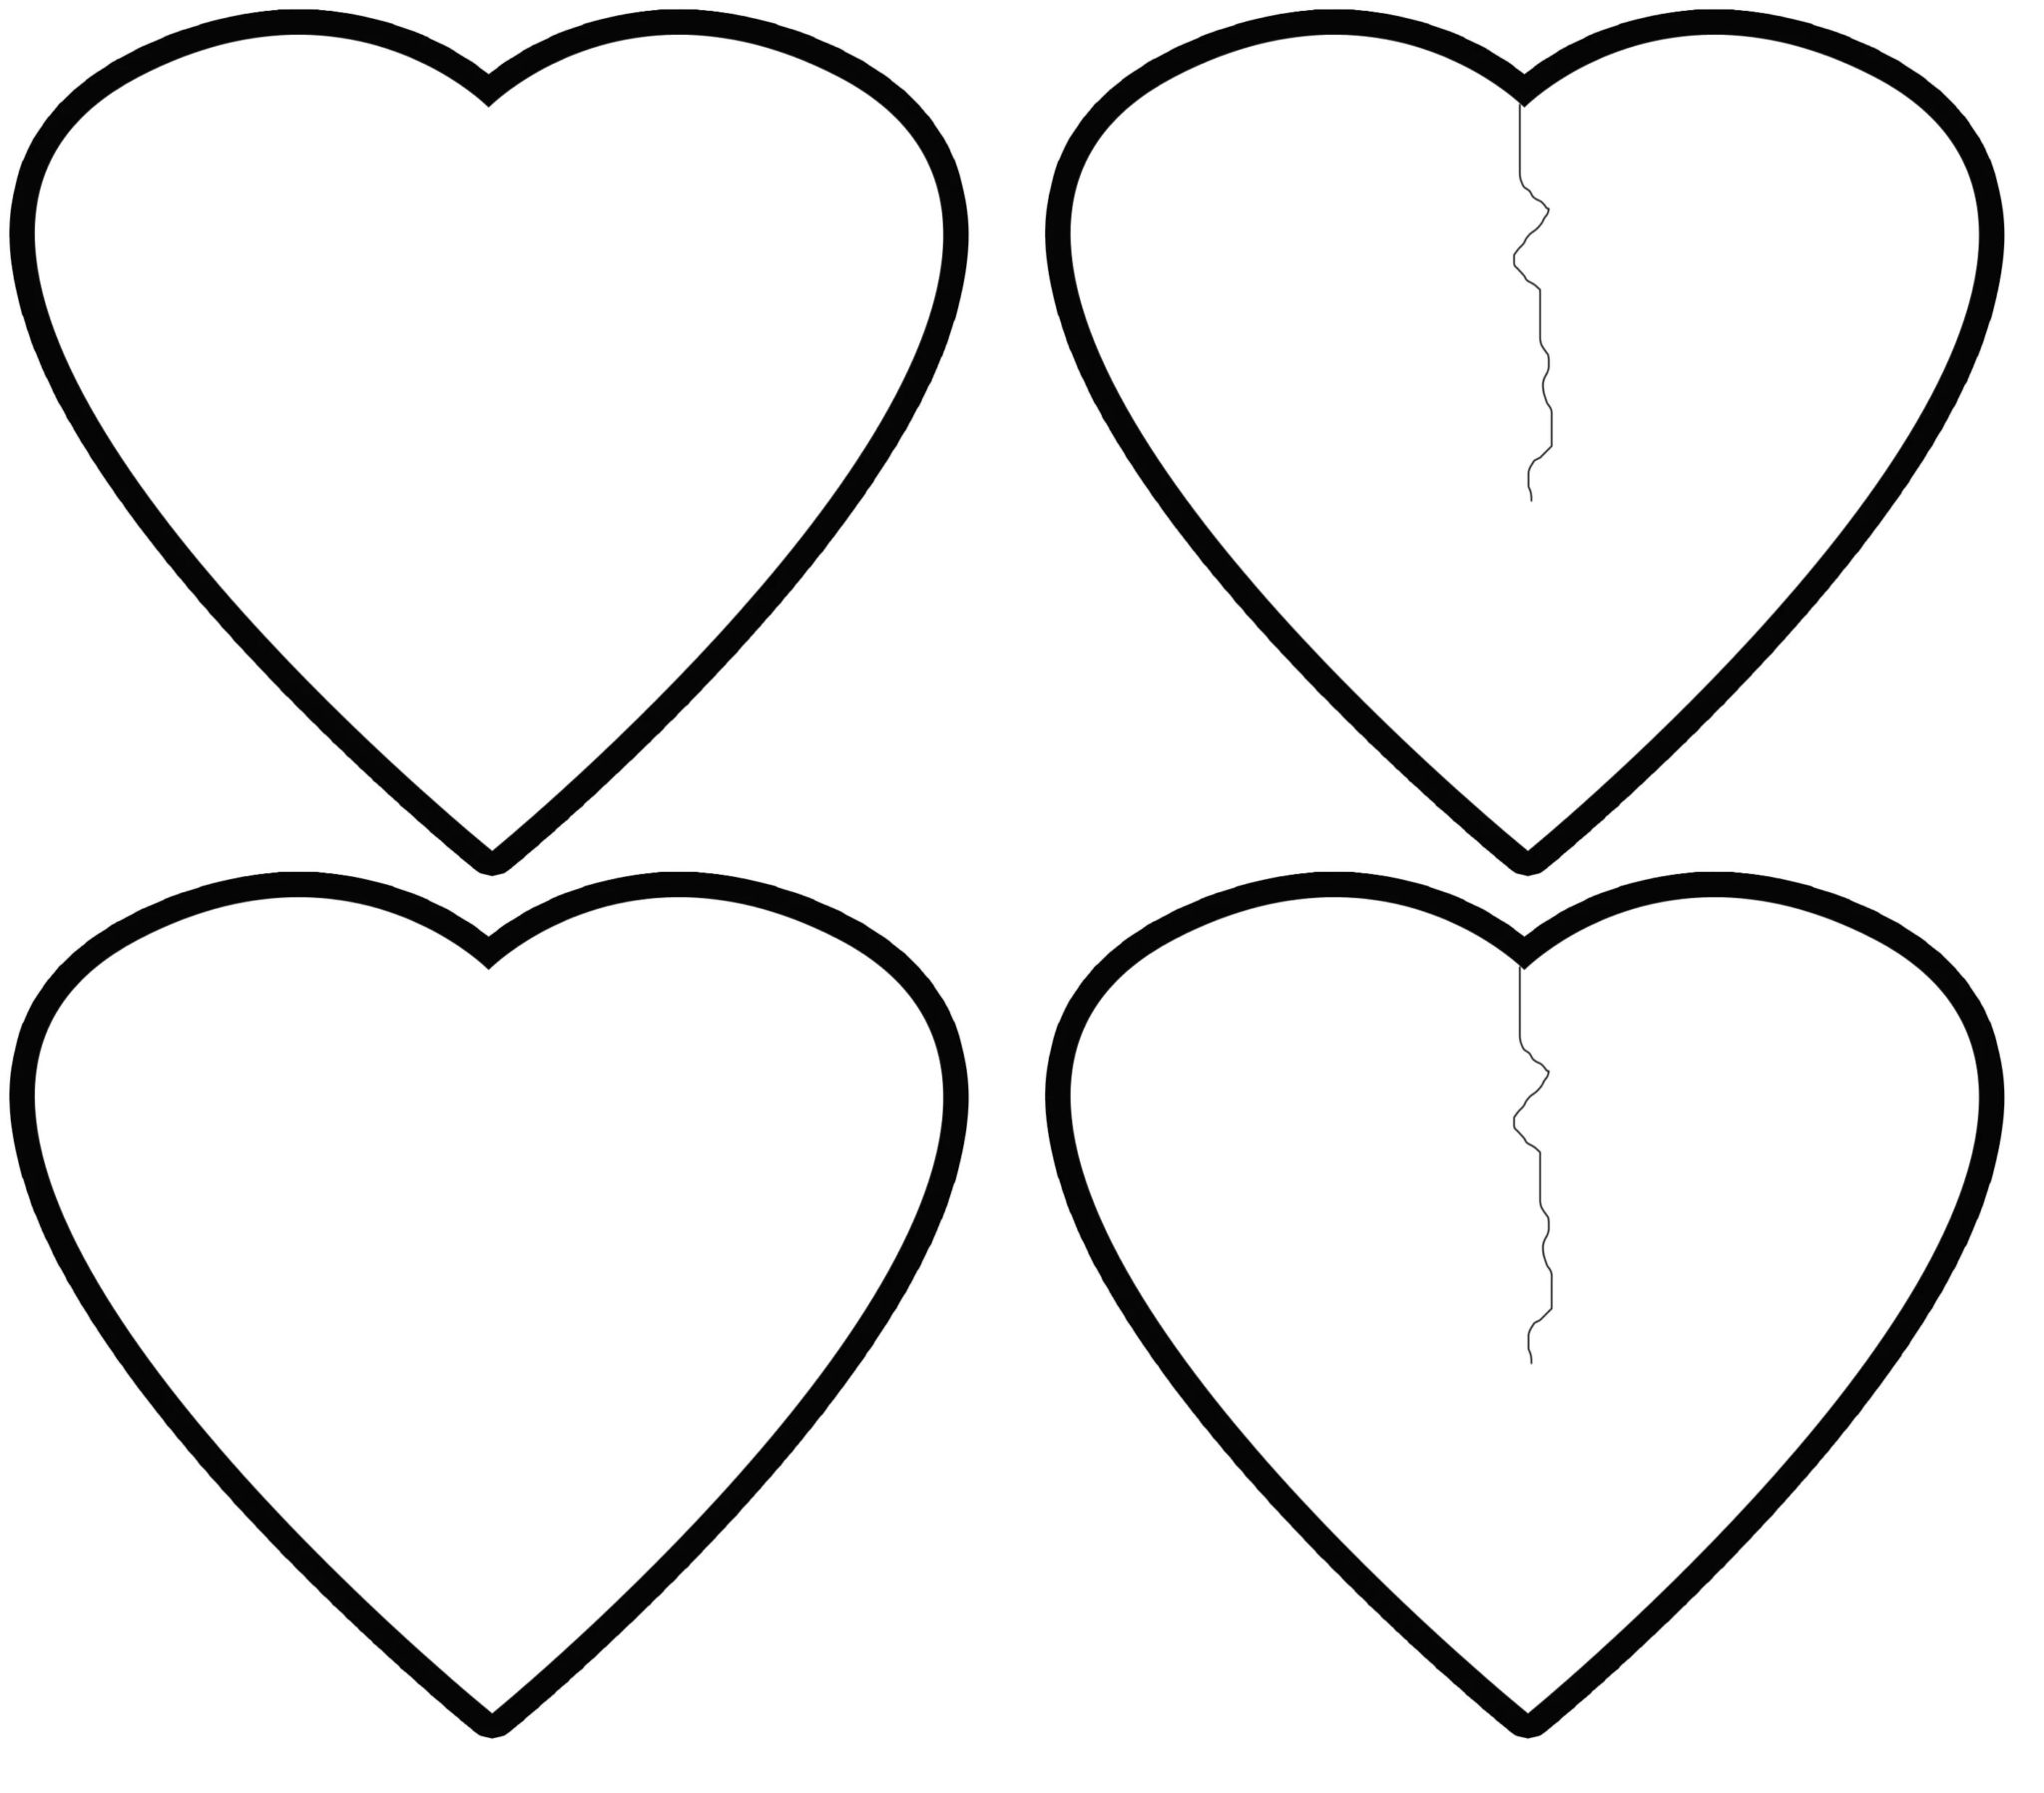 Трафареты сердечек для вырезания из бумаги